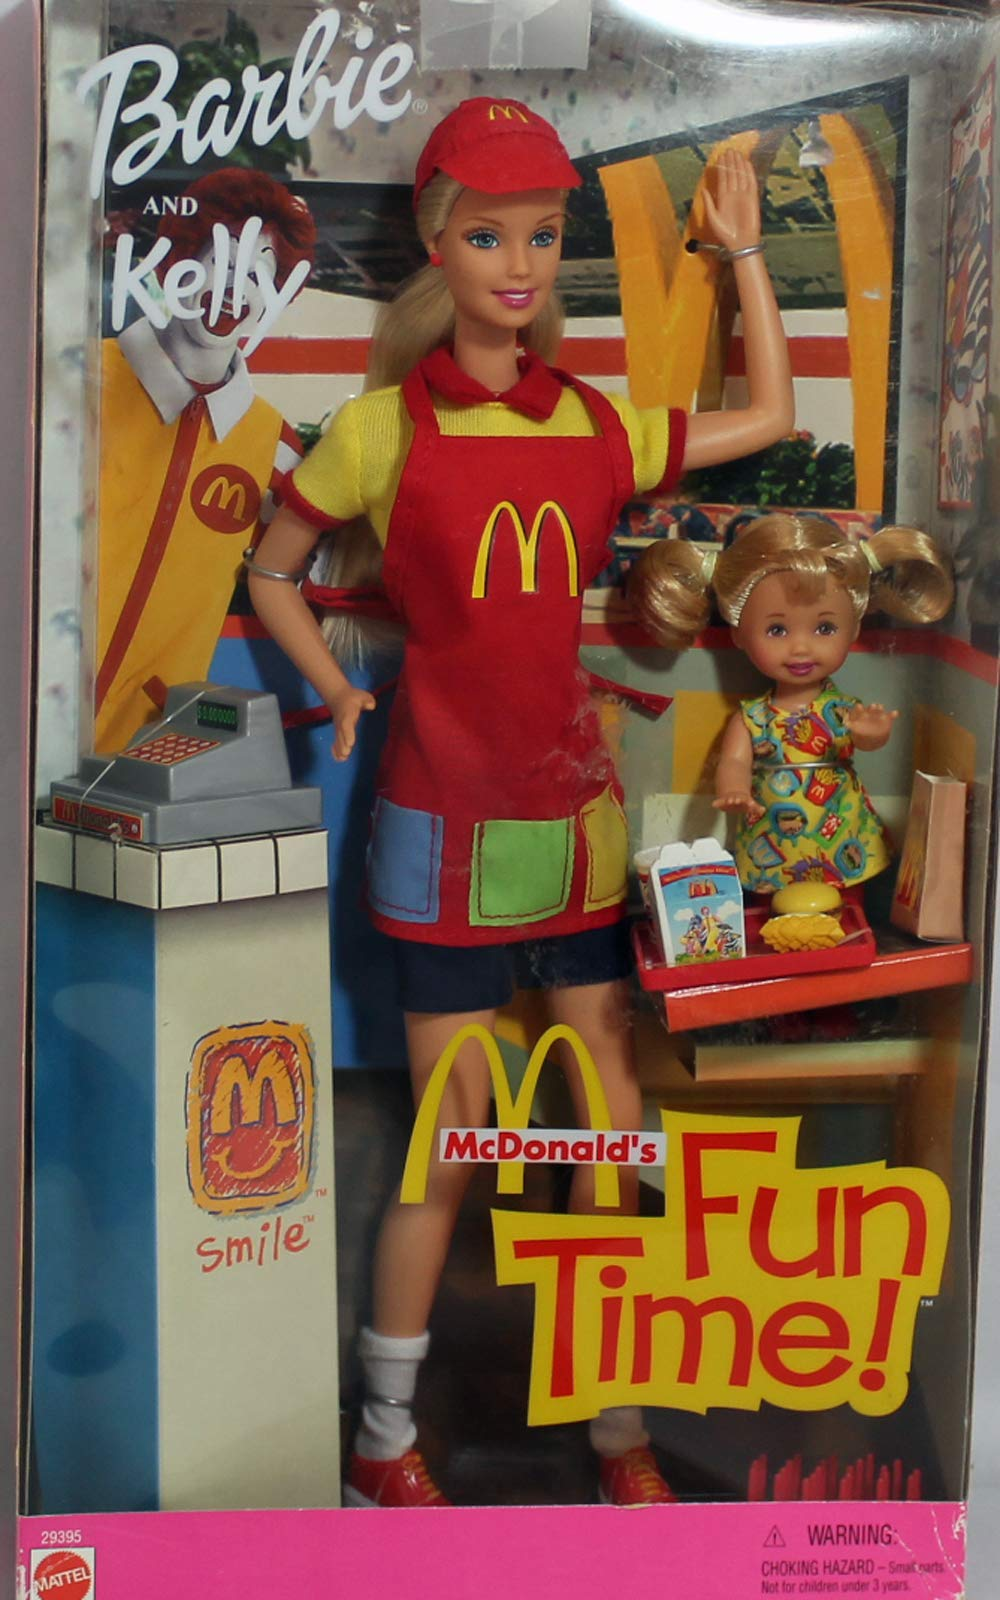 Coolest Barbie dolls - McDonald's Barbie